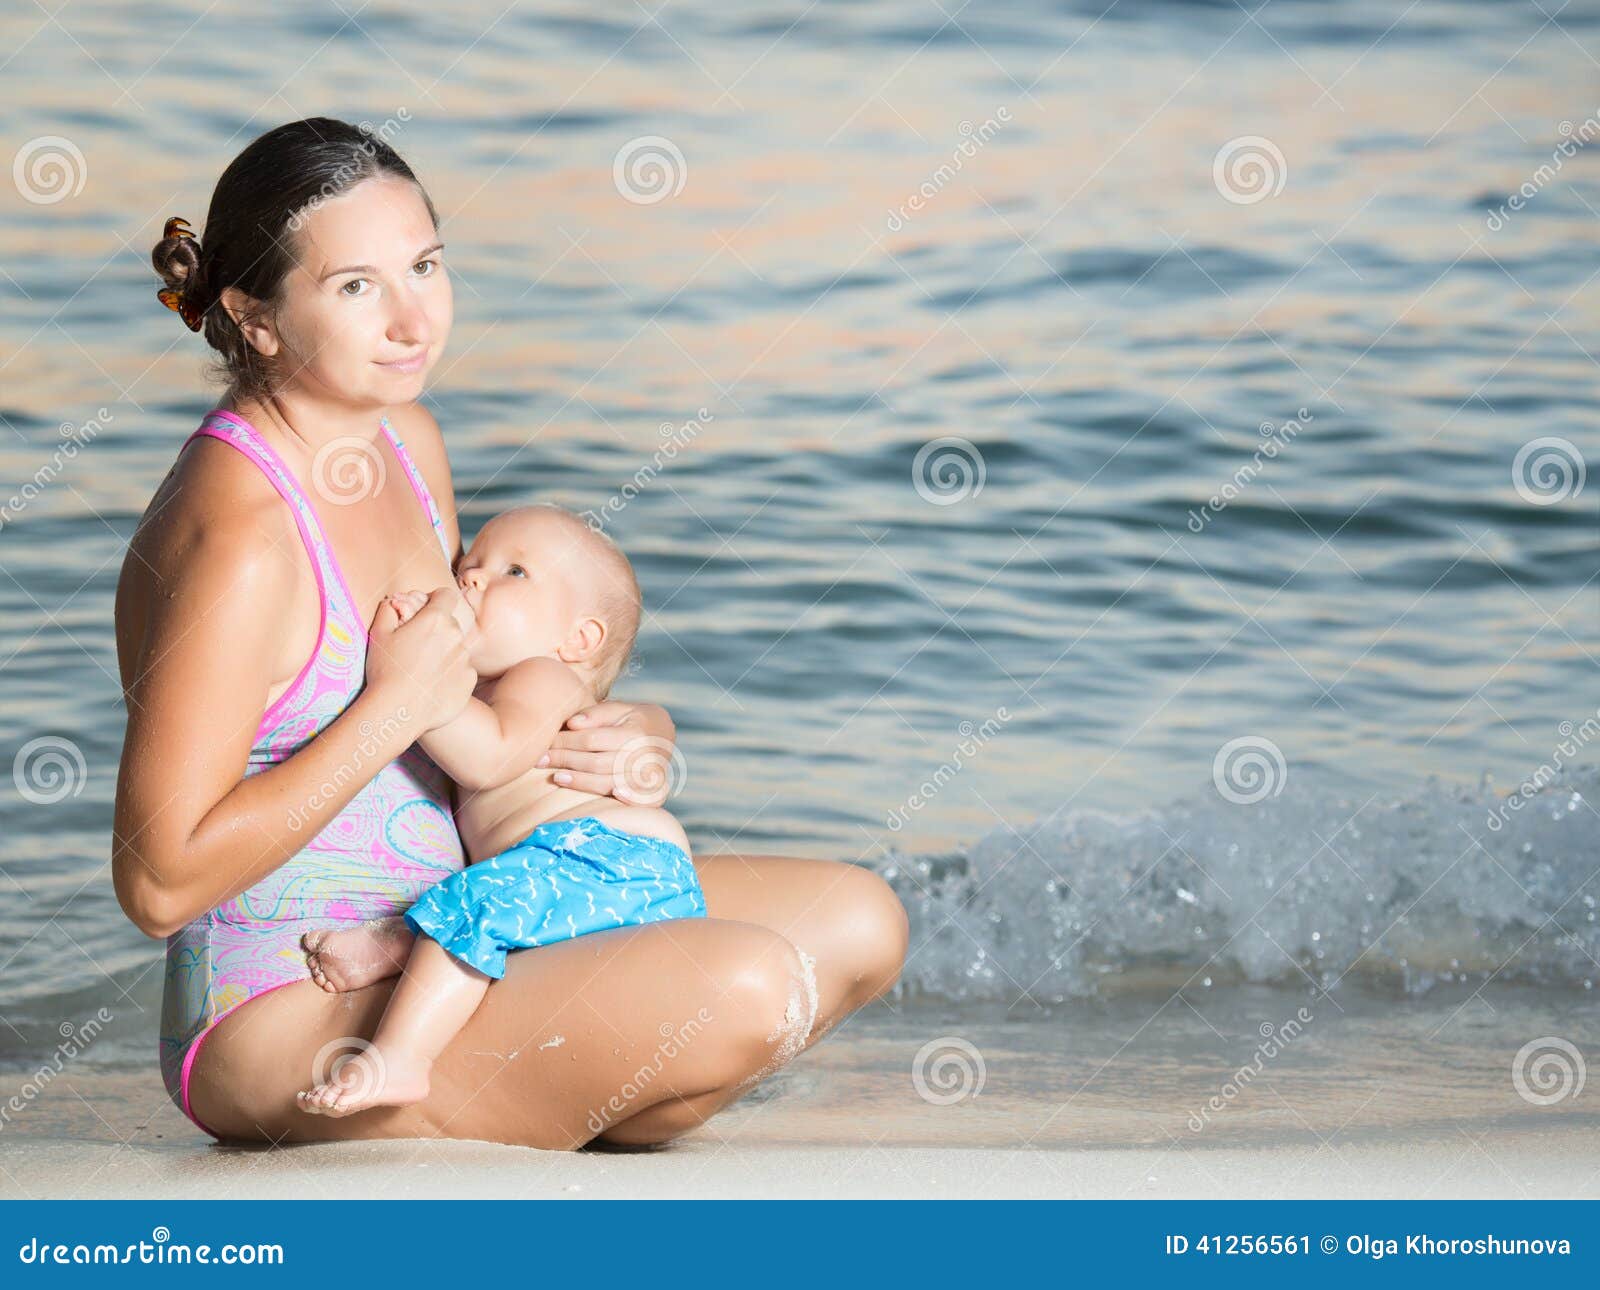 за голыми детьми на пляже фото 87